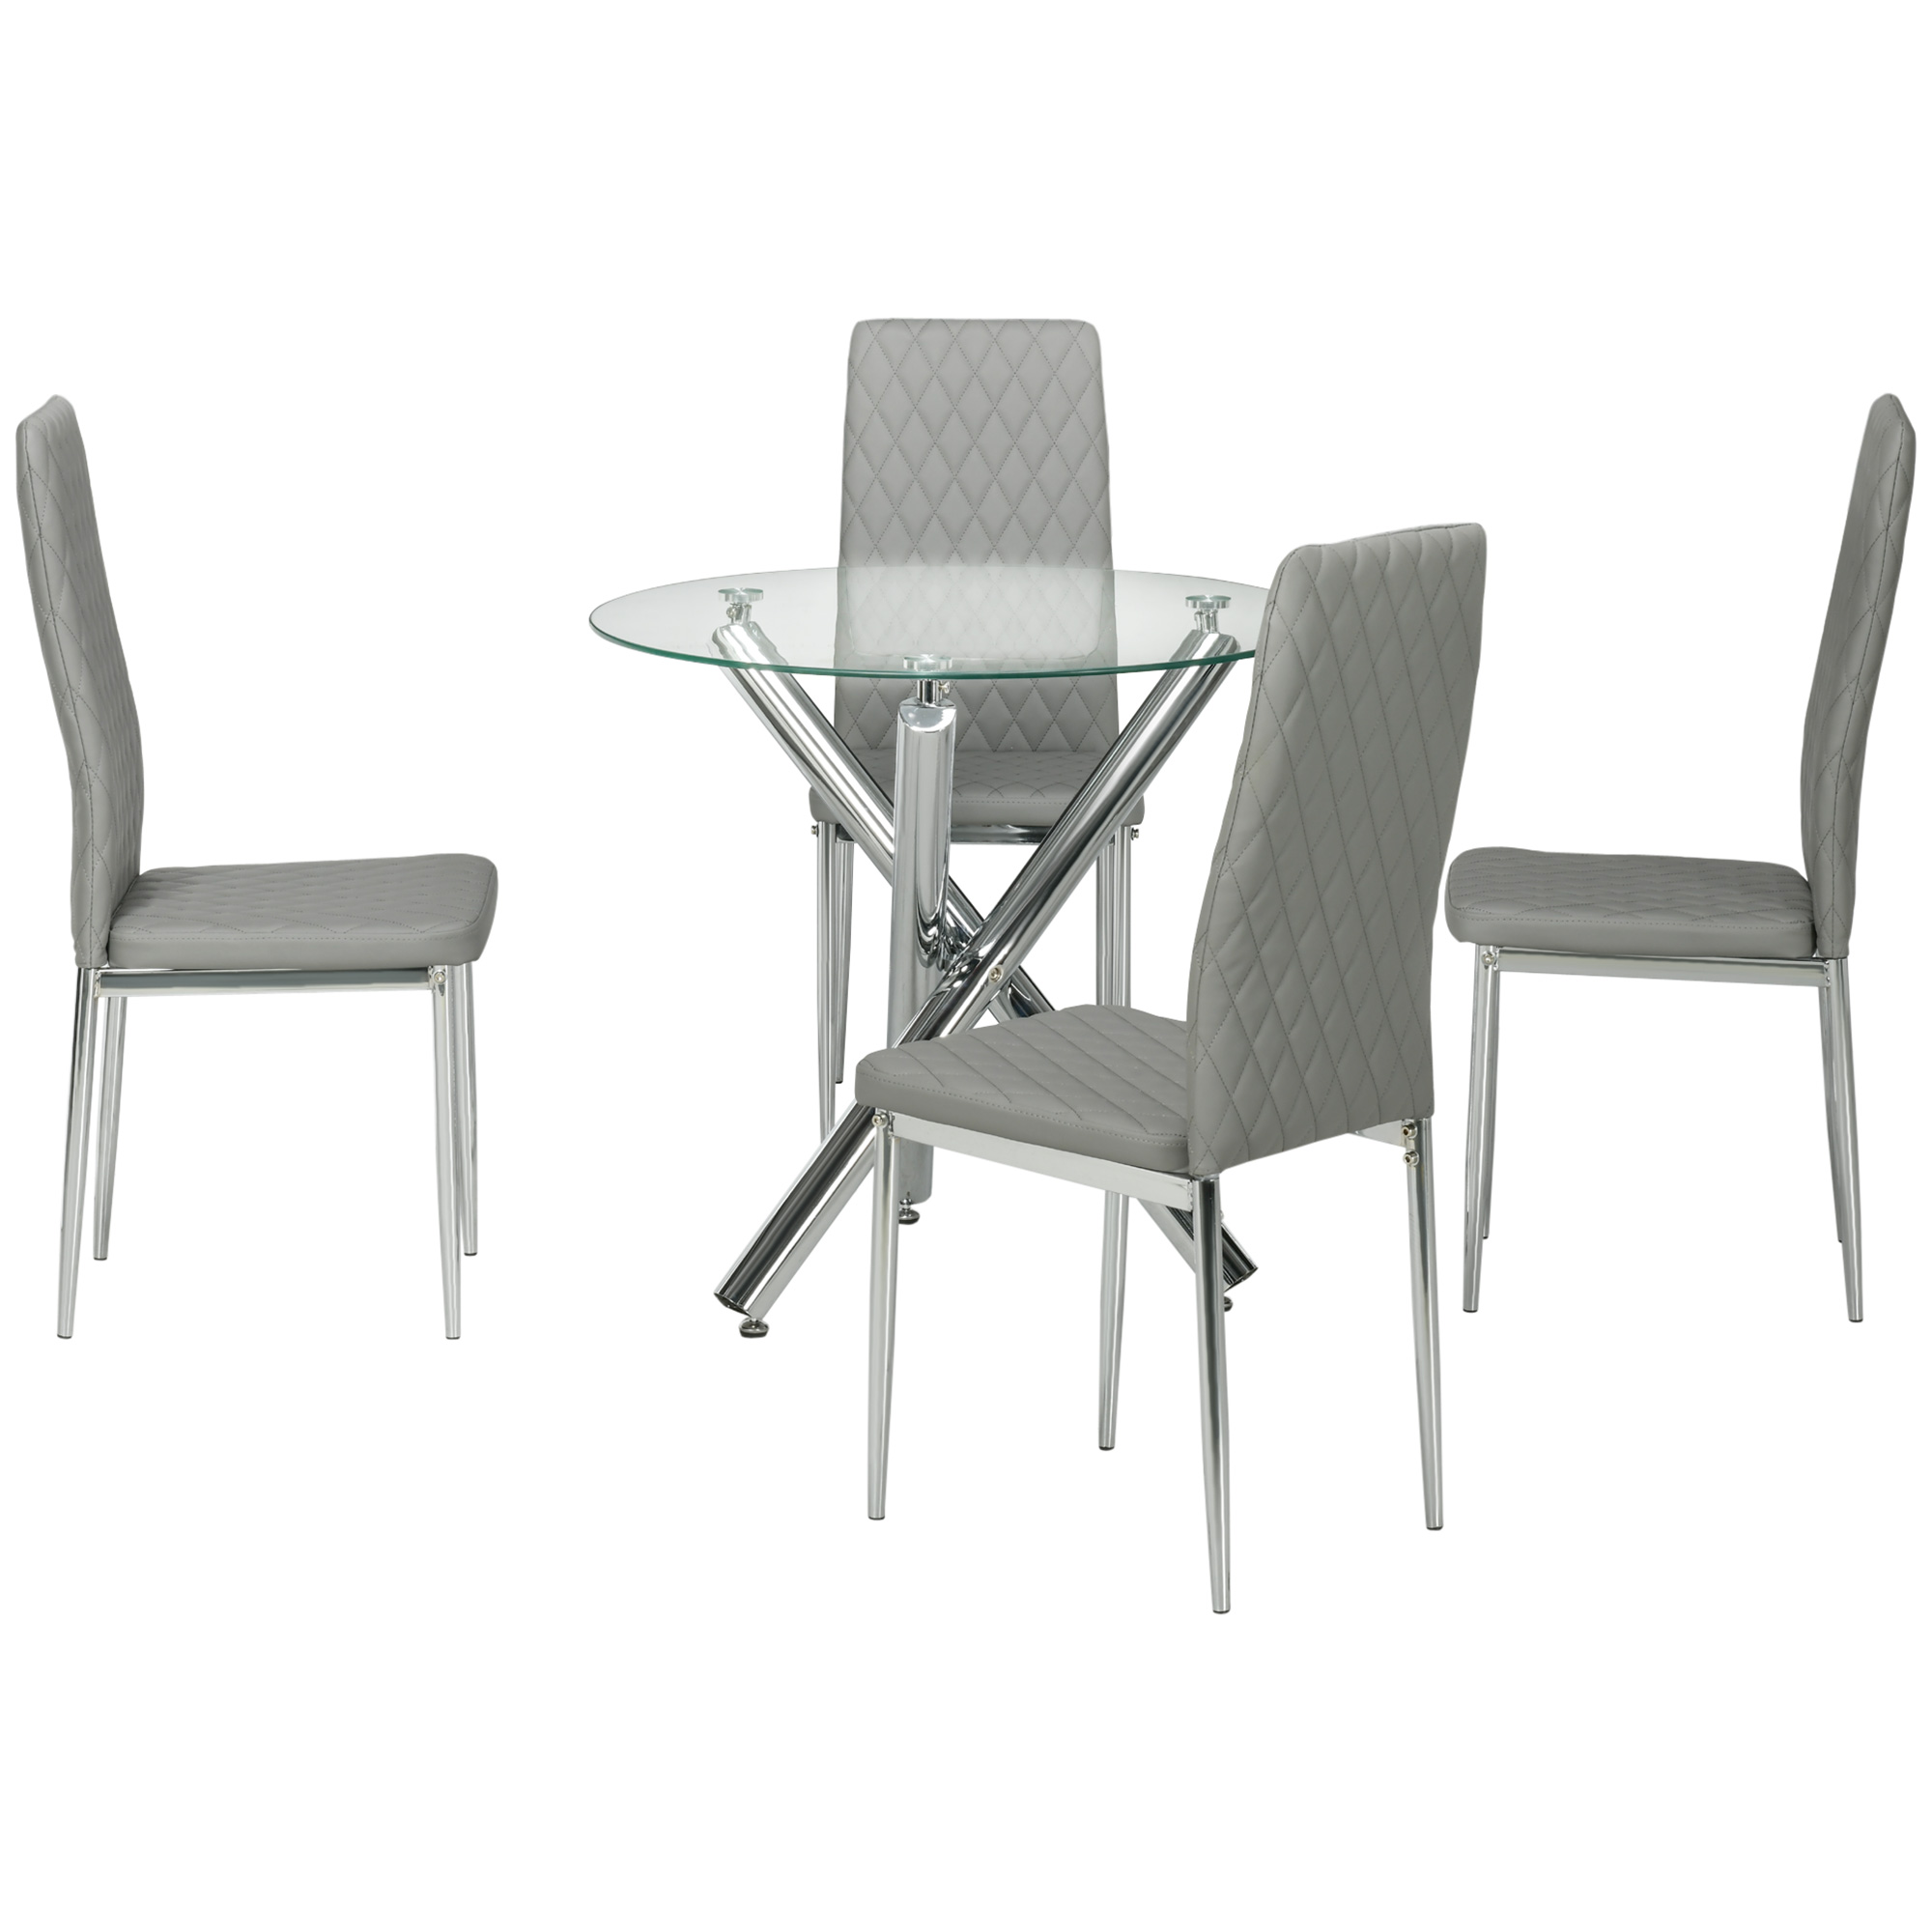 Σετ τραπεζαρίας HOMCOM με στρογγυλό γυάλινο τραπέζι και 4 δερμάτινες καρέκλες PU